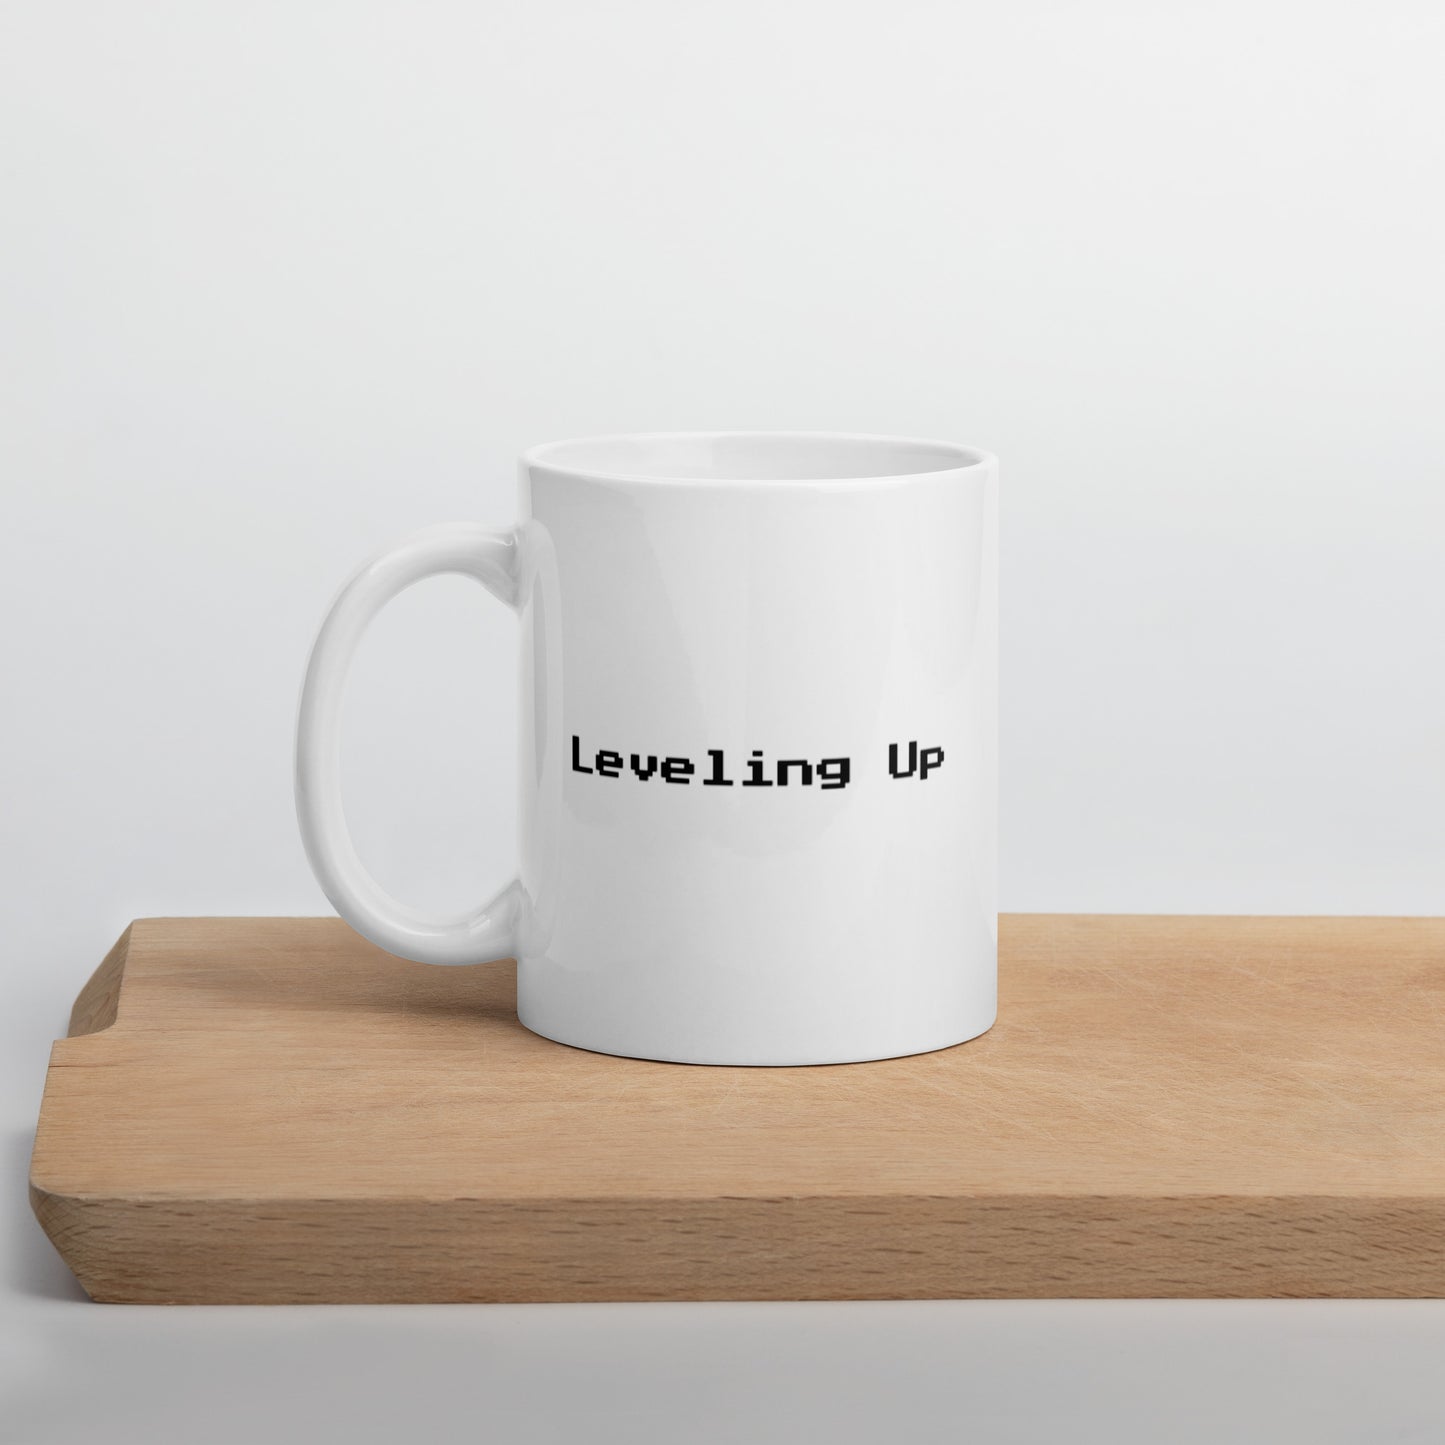 Leveling up - Mug